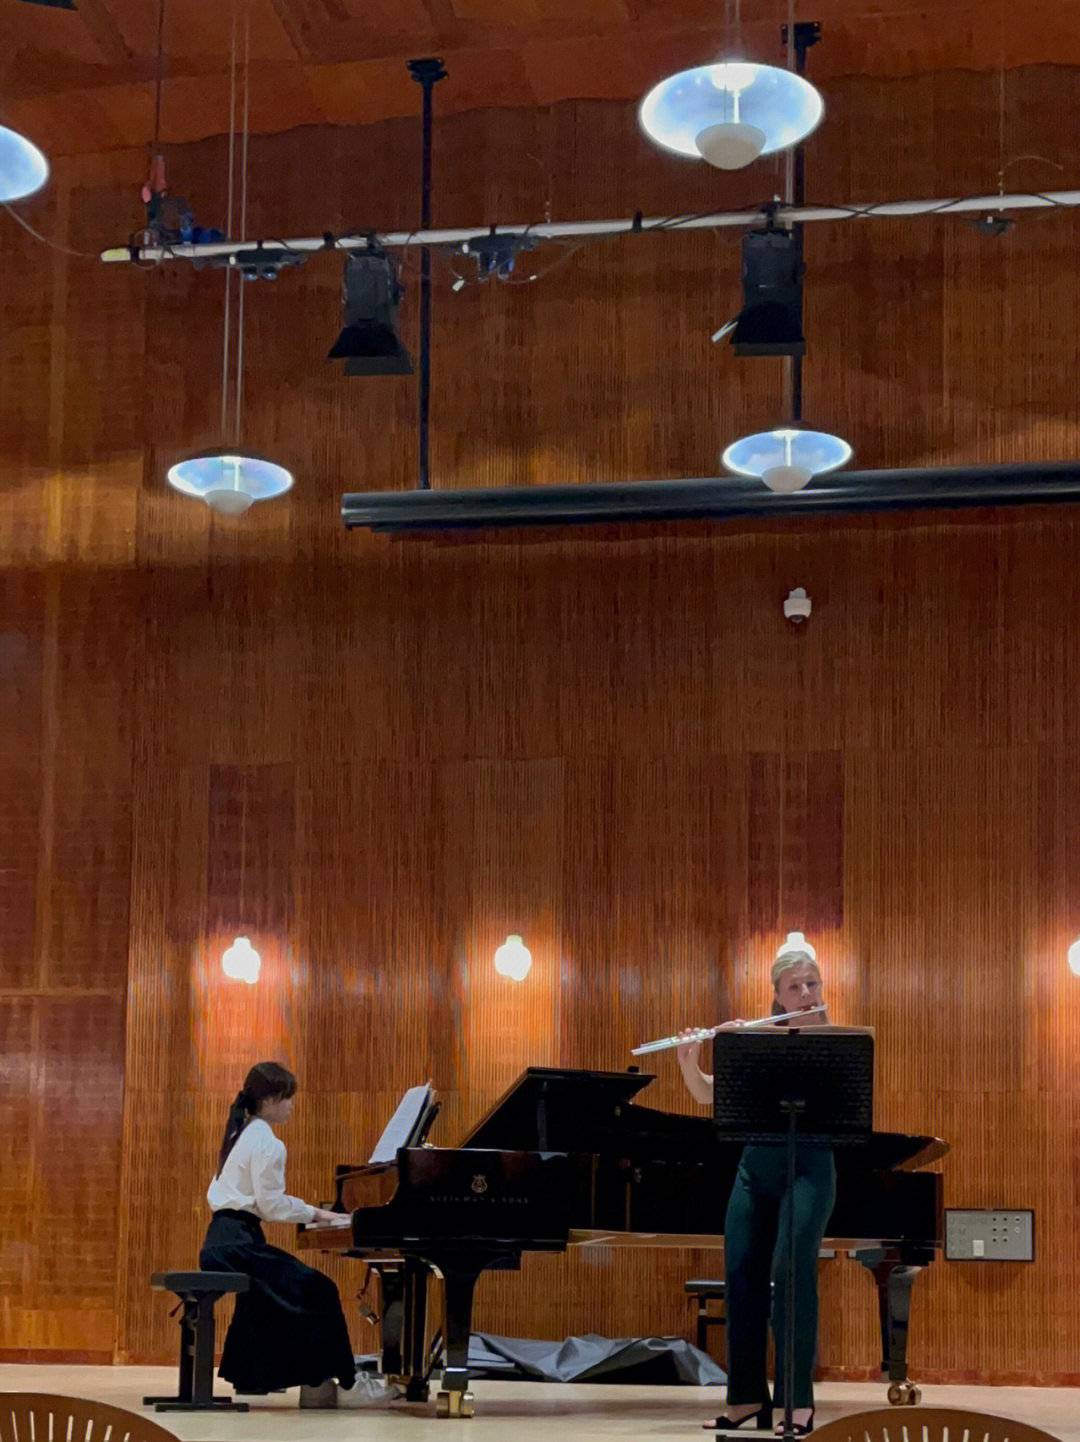 来丹麦皇家音乐学院的第一次上台体验与长笛合作室内乐在琴房排练和